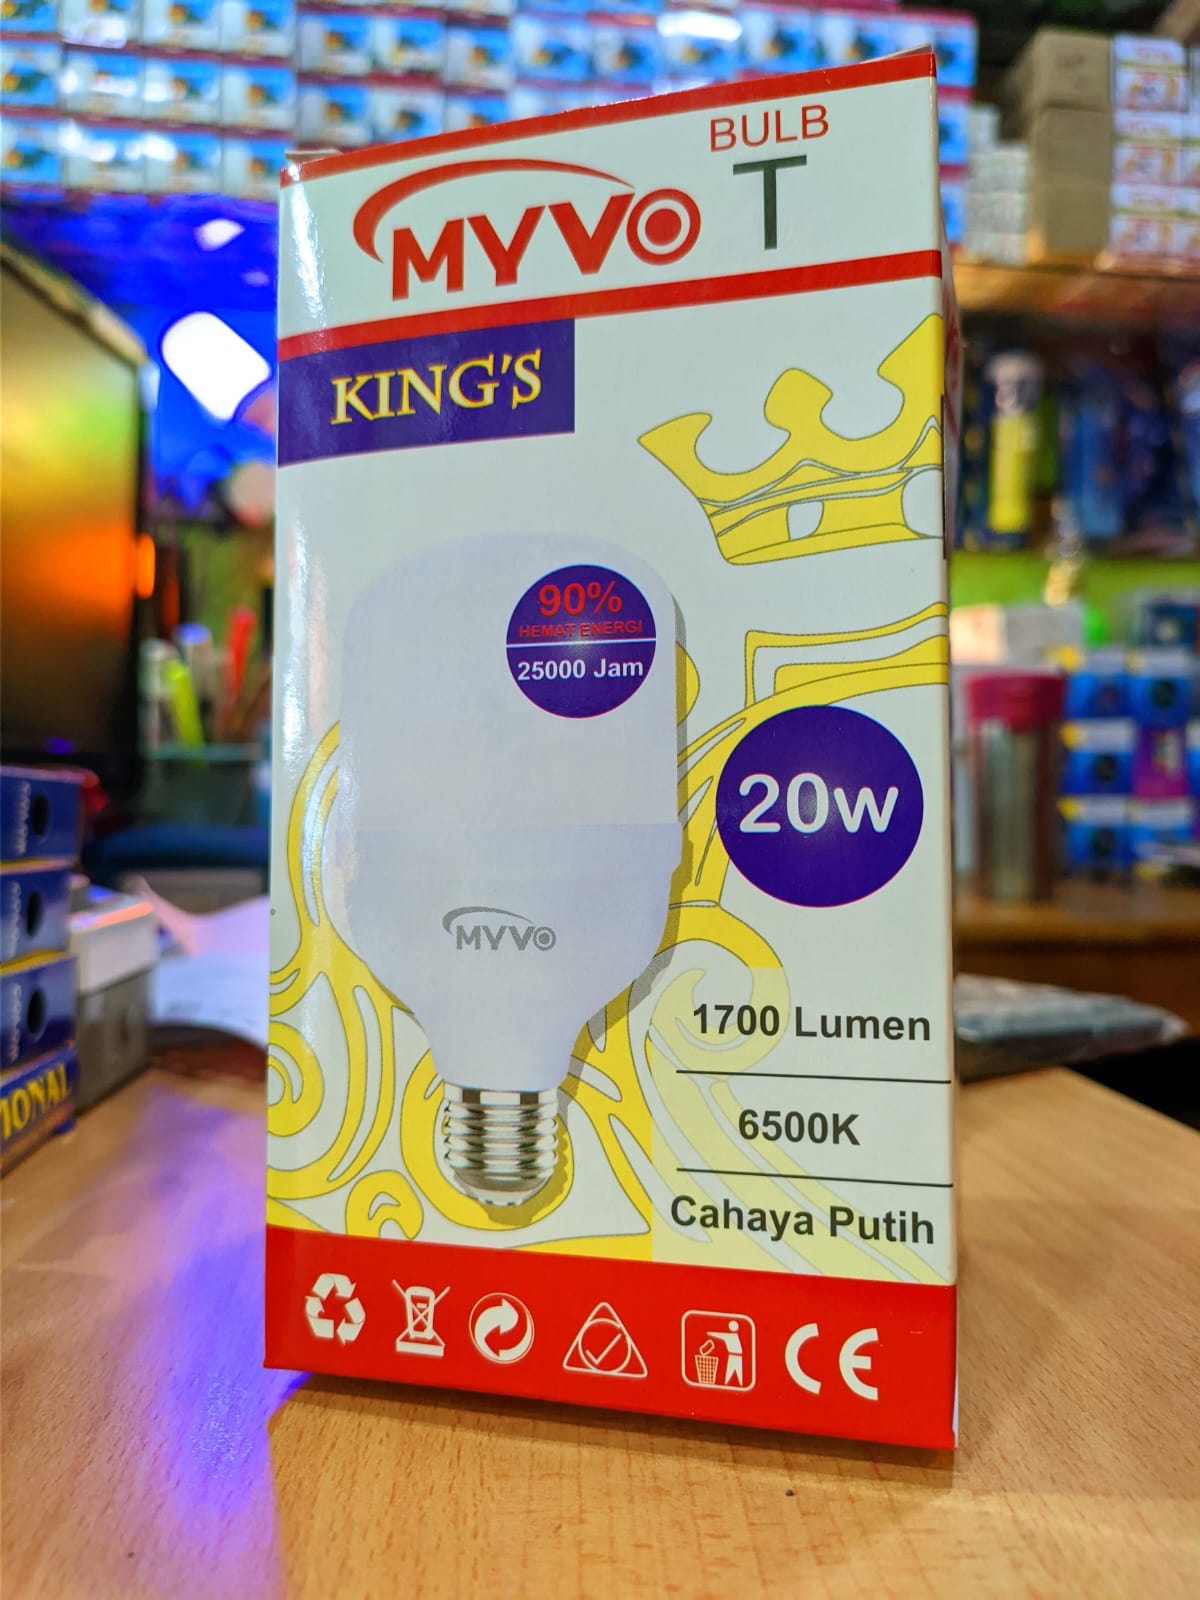 LAMPU LED MIVO KING'S 20 WATT